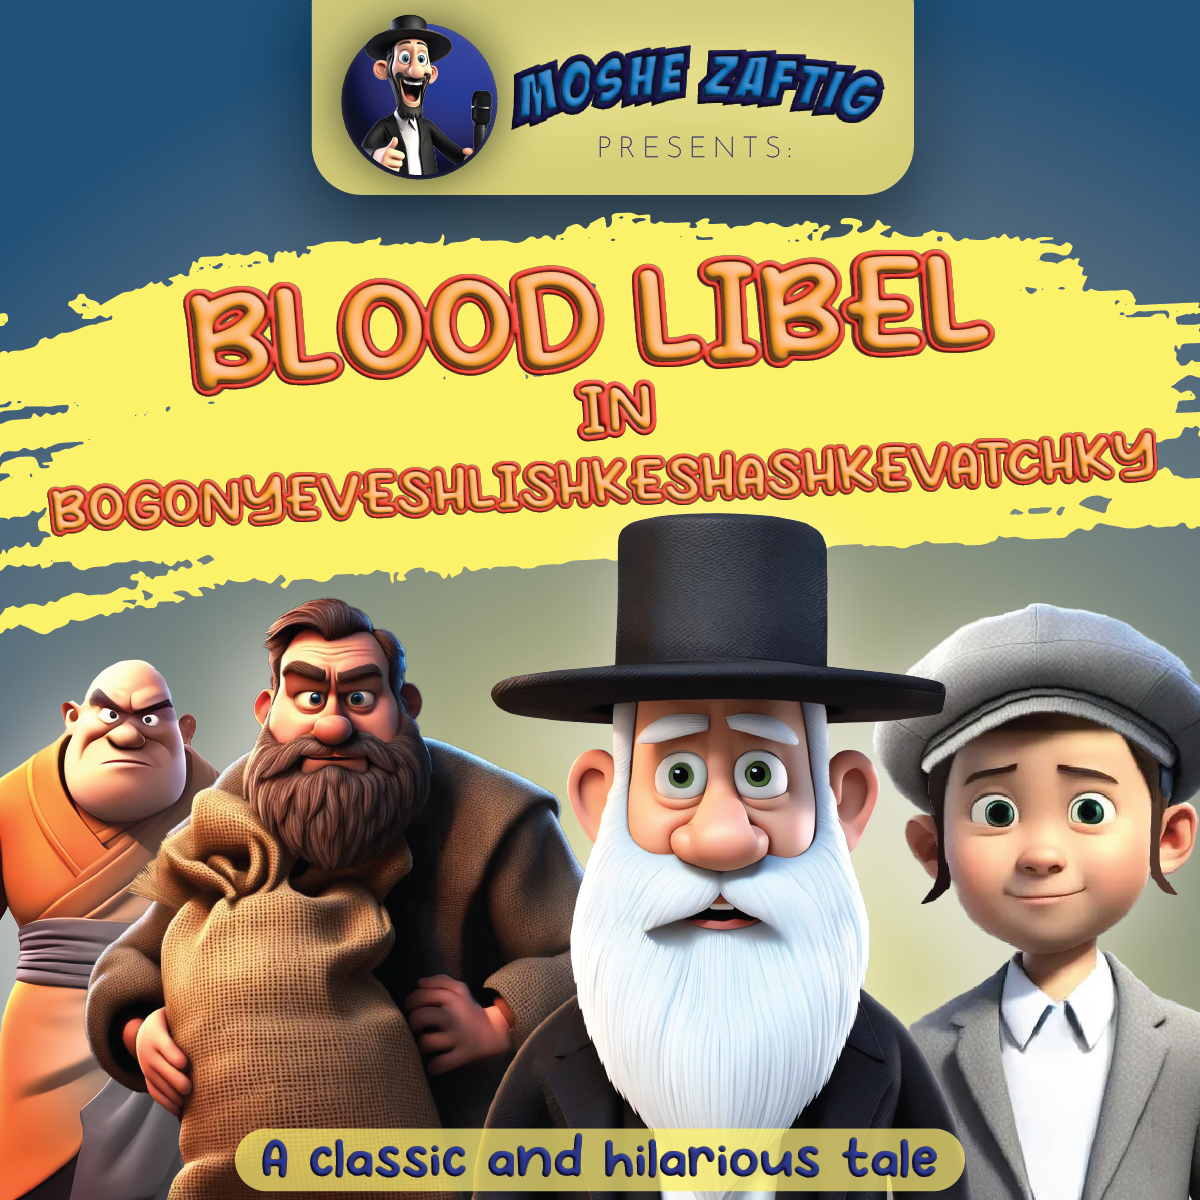 Moshe Zaftig - Blood Libel in Bogonyeveshlishkeshashkevatchky